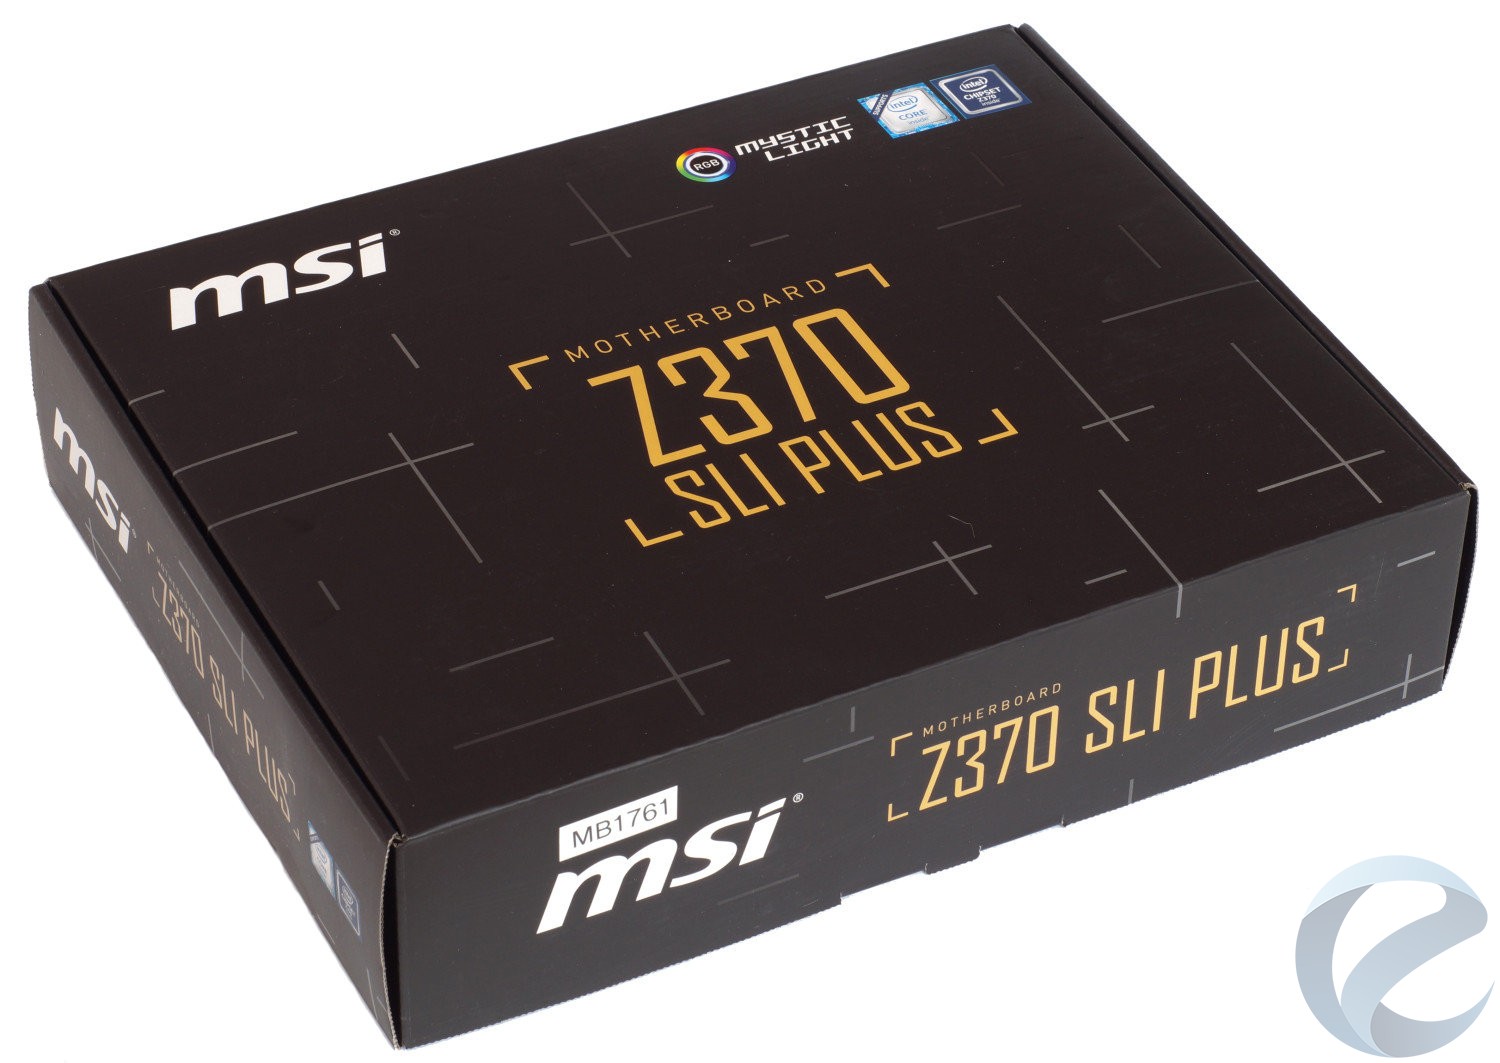 Упаковка и комплектация материнской платы MSI Z370 SLI PLUS